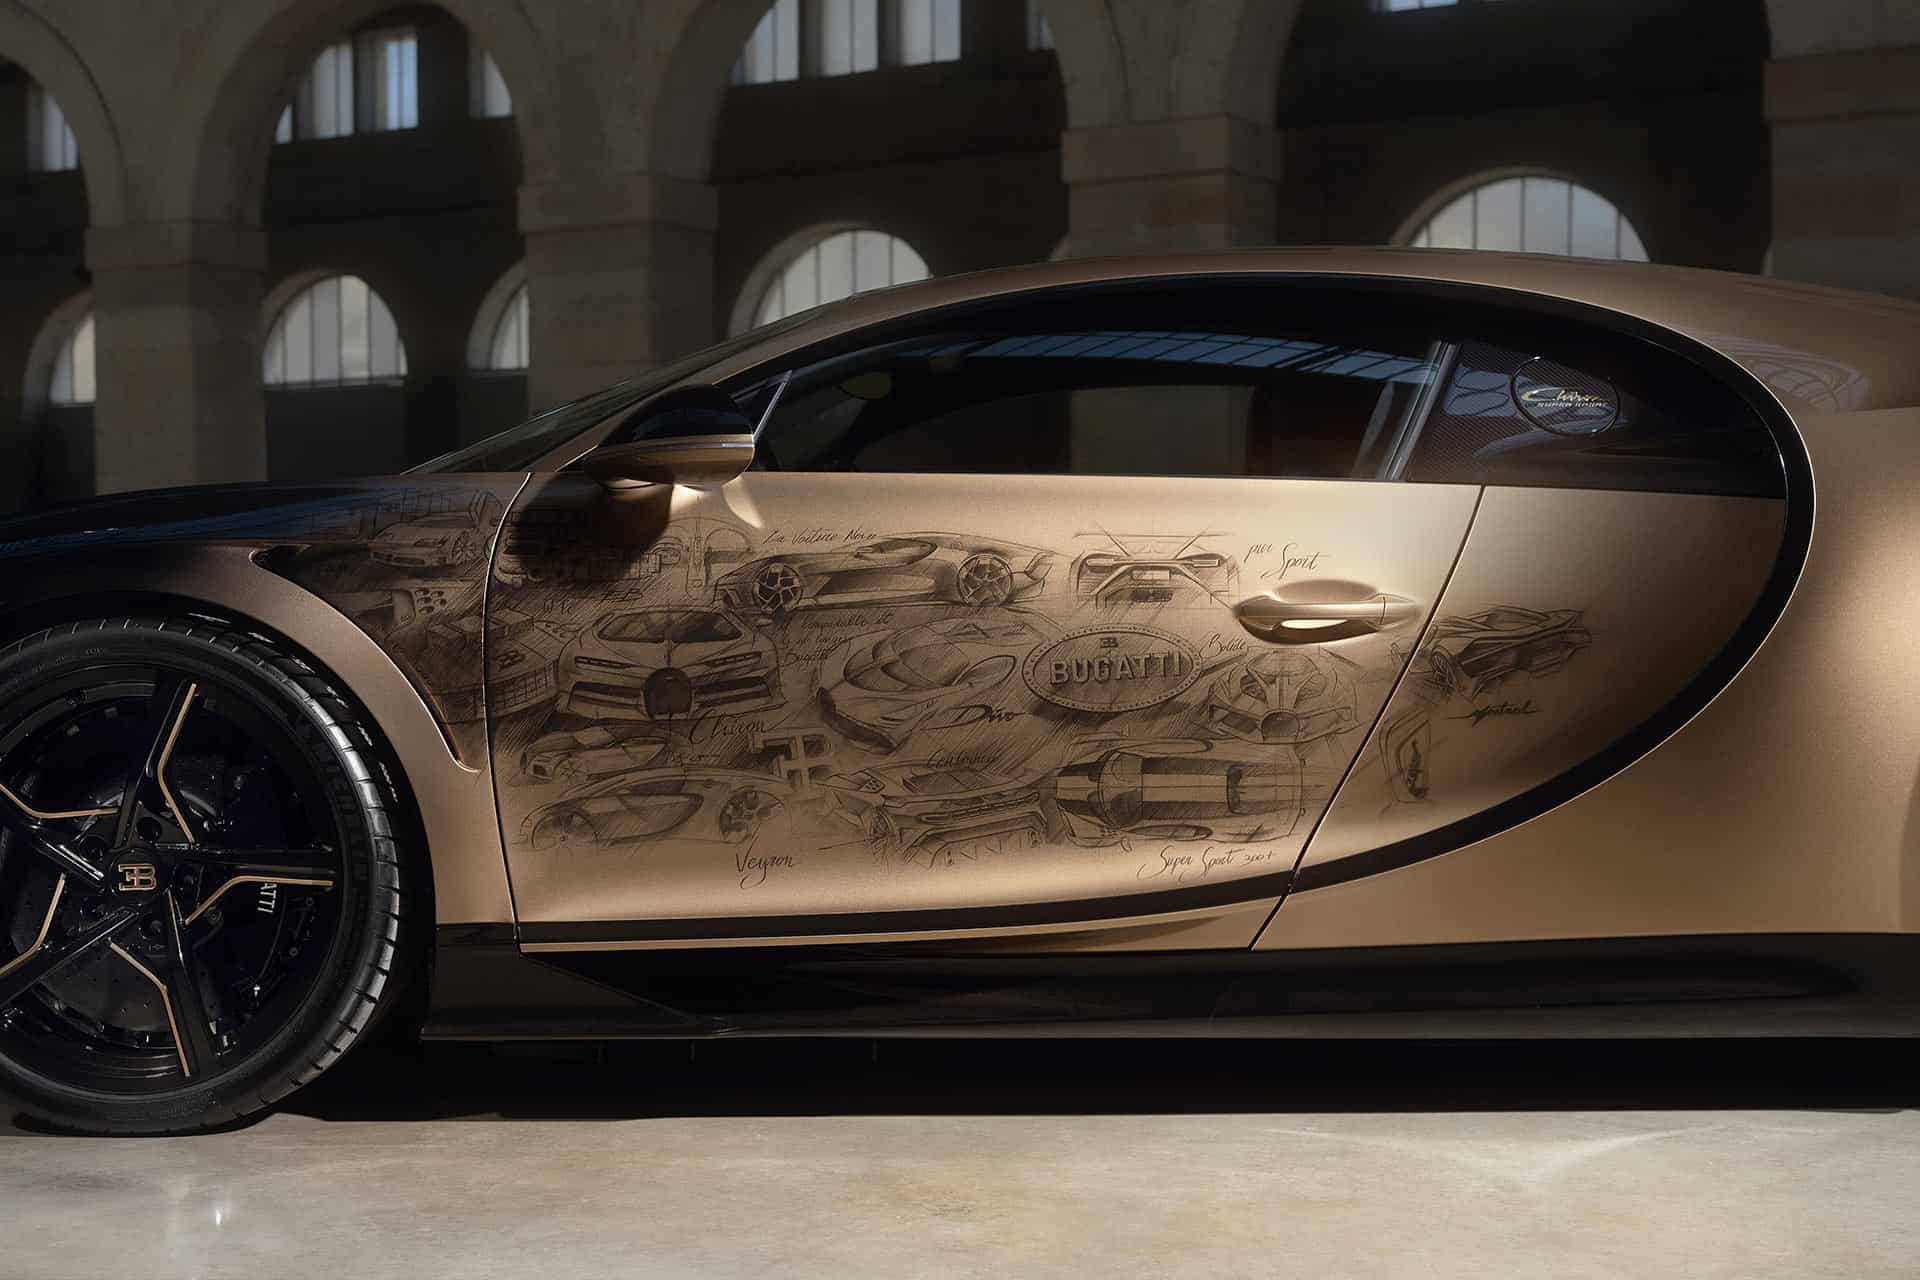 Historische Skizzen aus der Geschichte von Bugatti finden sich auch auf der Fahrertür des "Golden Era"